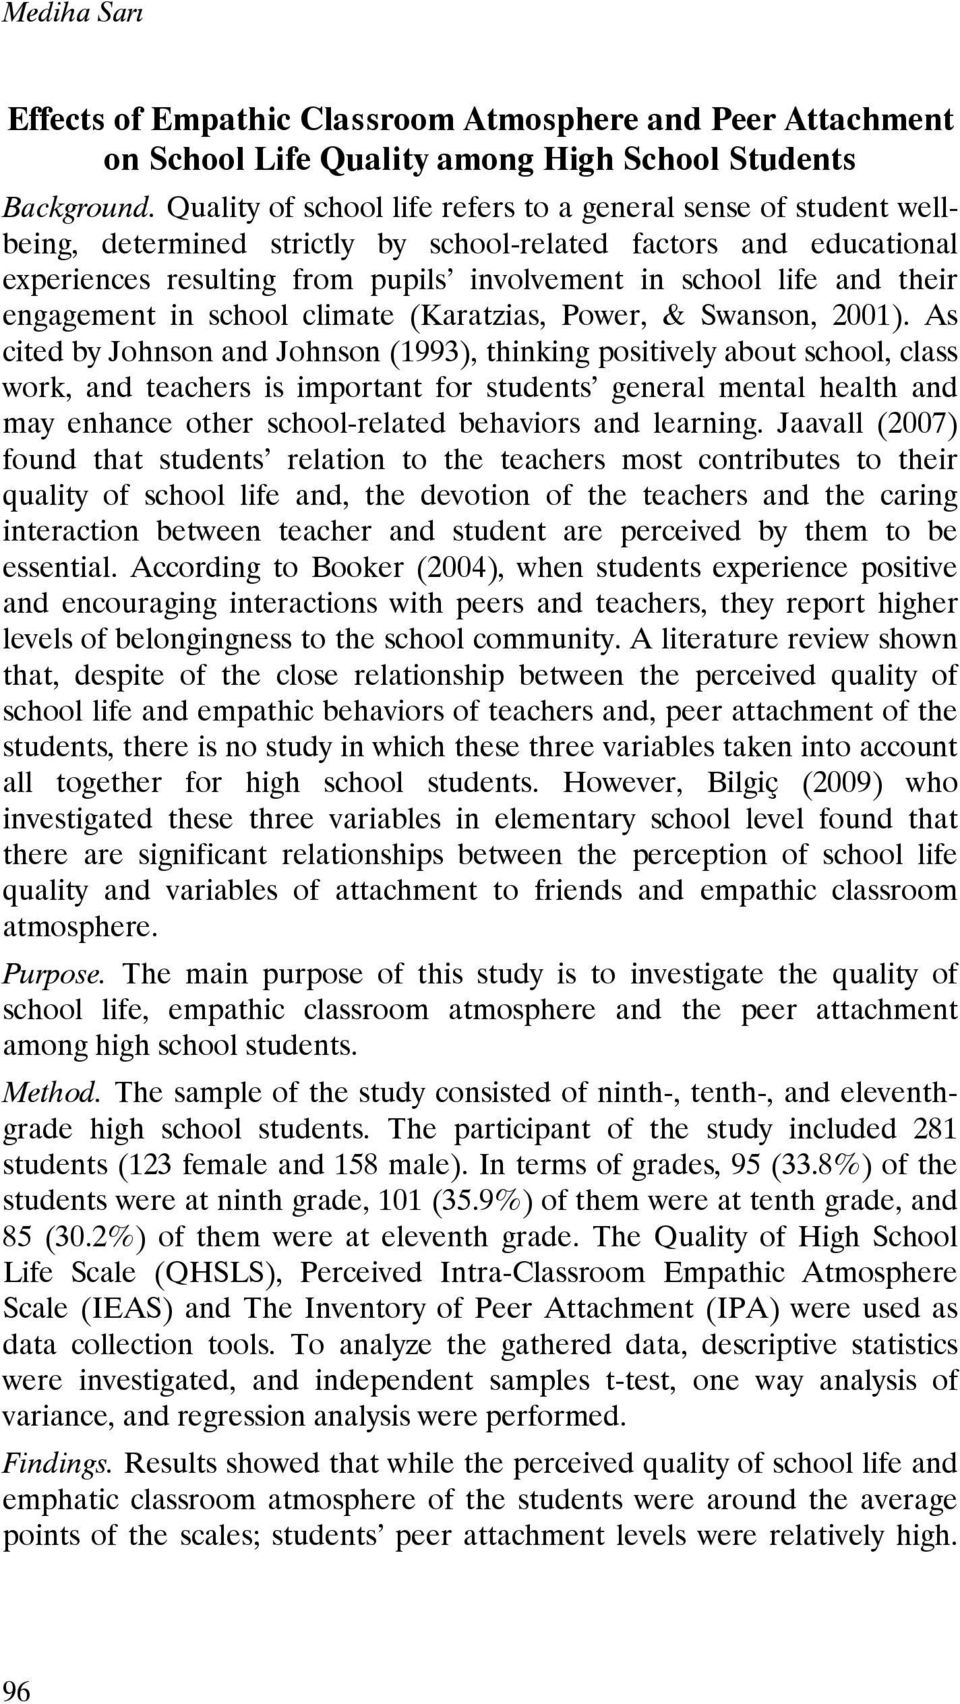 their engagement in school climate (Karatzias, Power, & Swanson, 2001).